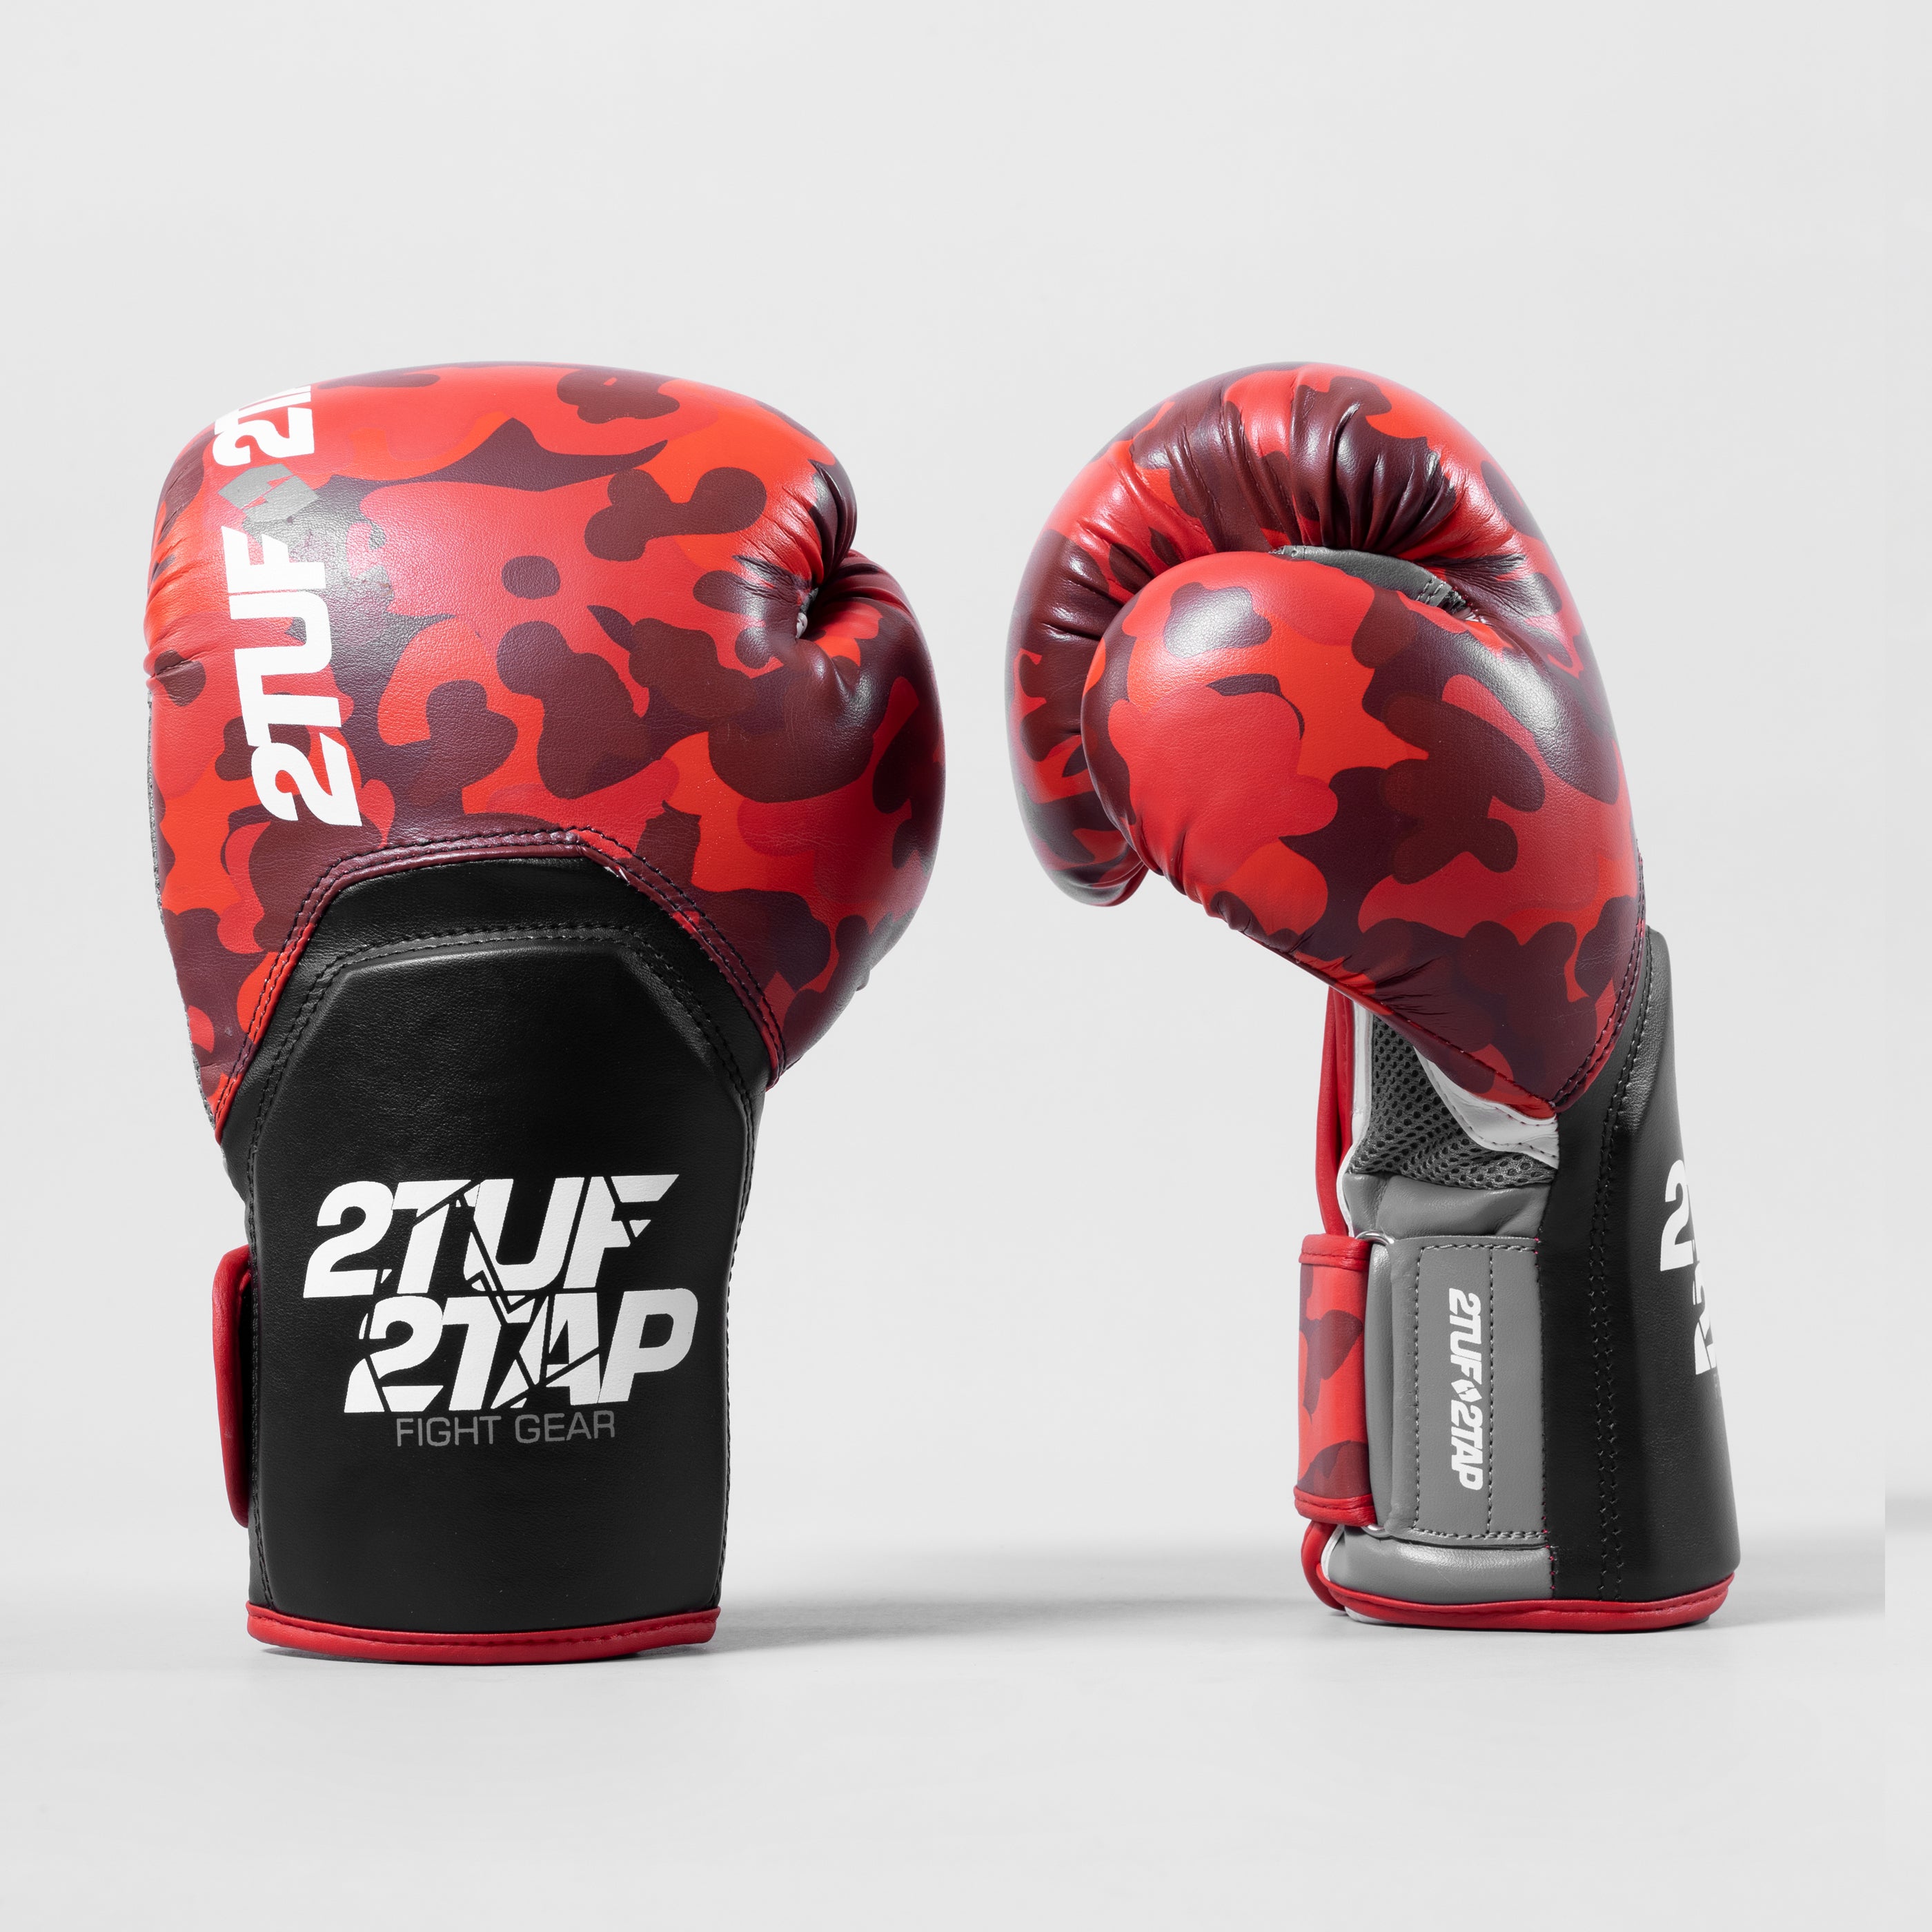 'Camo Elite' Boxing Gloves - Red/Black 2TUF2TAP